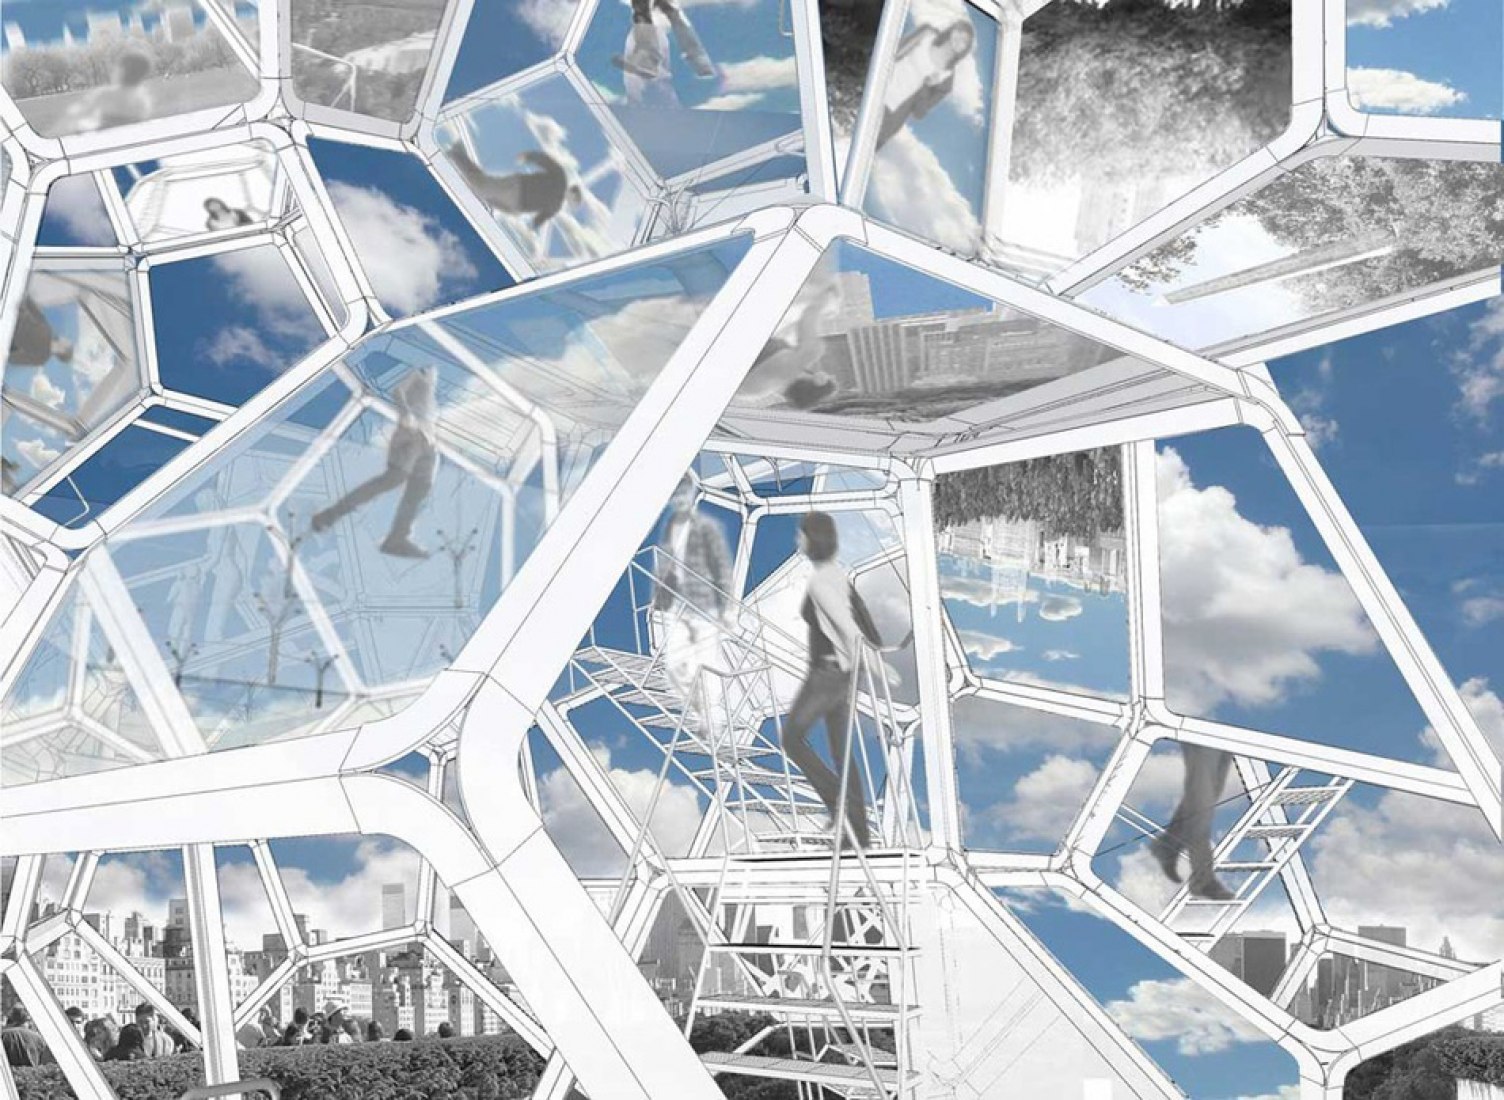 Montaje conceptual del artista. Dibuos por Tomás Saraceno, sobre la Cubierta: Cloud City. M.E.T. NY.